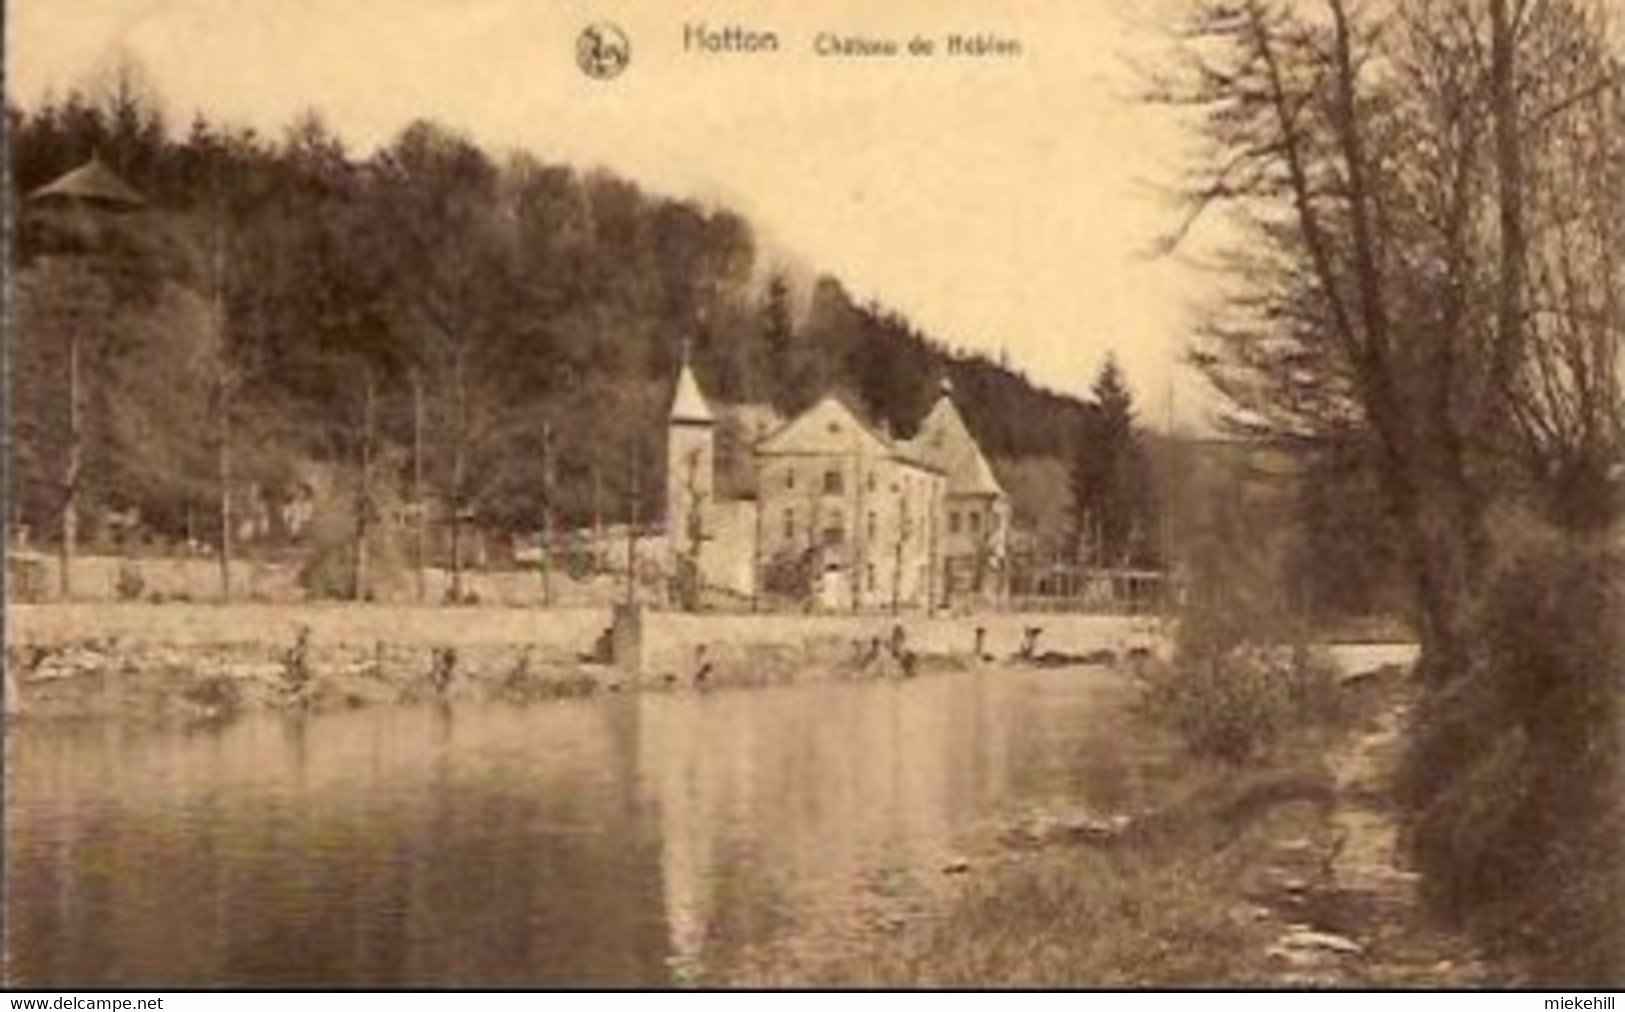 HOTTON CHATEAU DE HEBION - Hotton